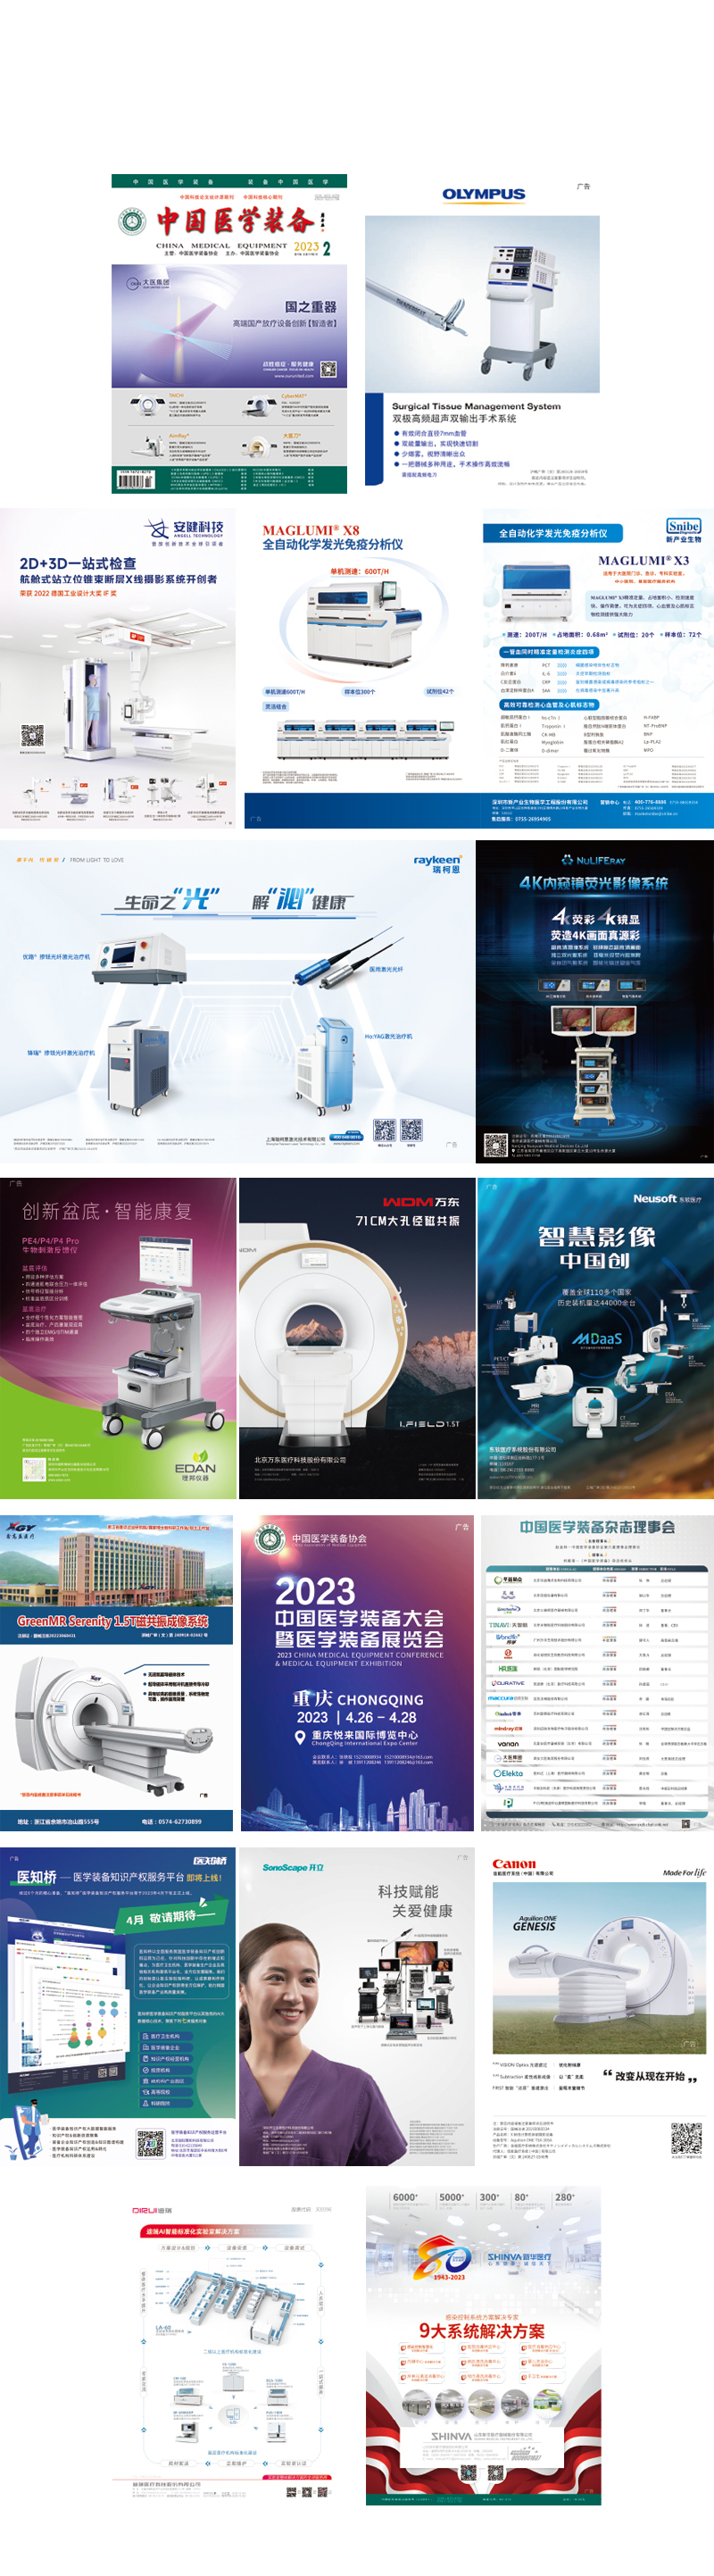 《中国医学装备》2023年2期出版(图2)